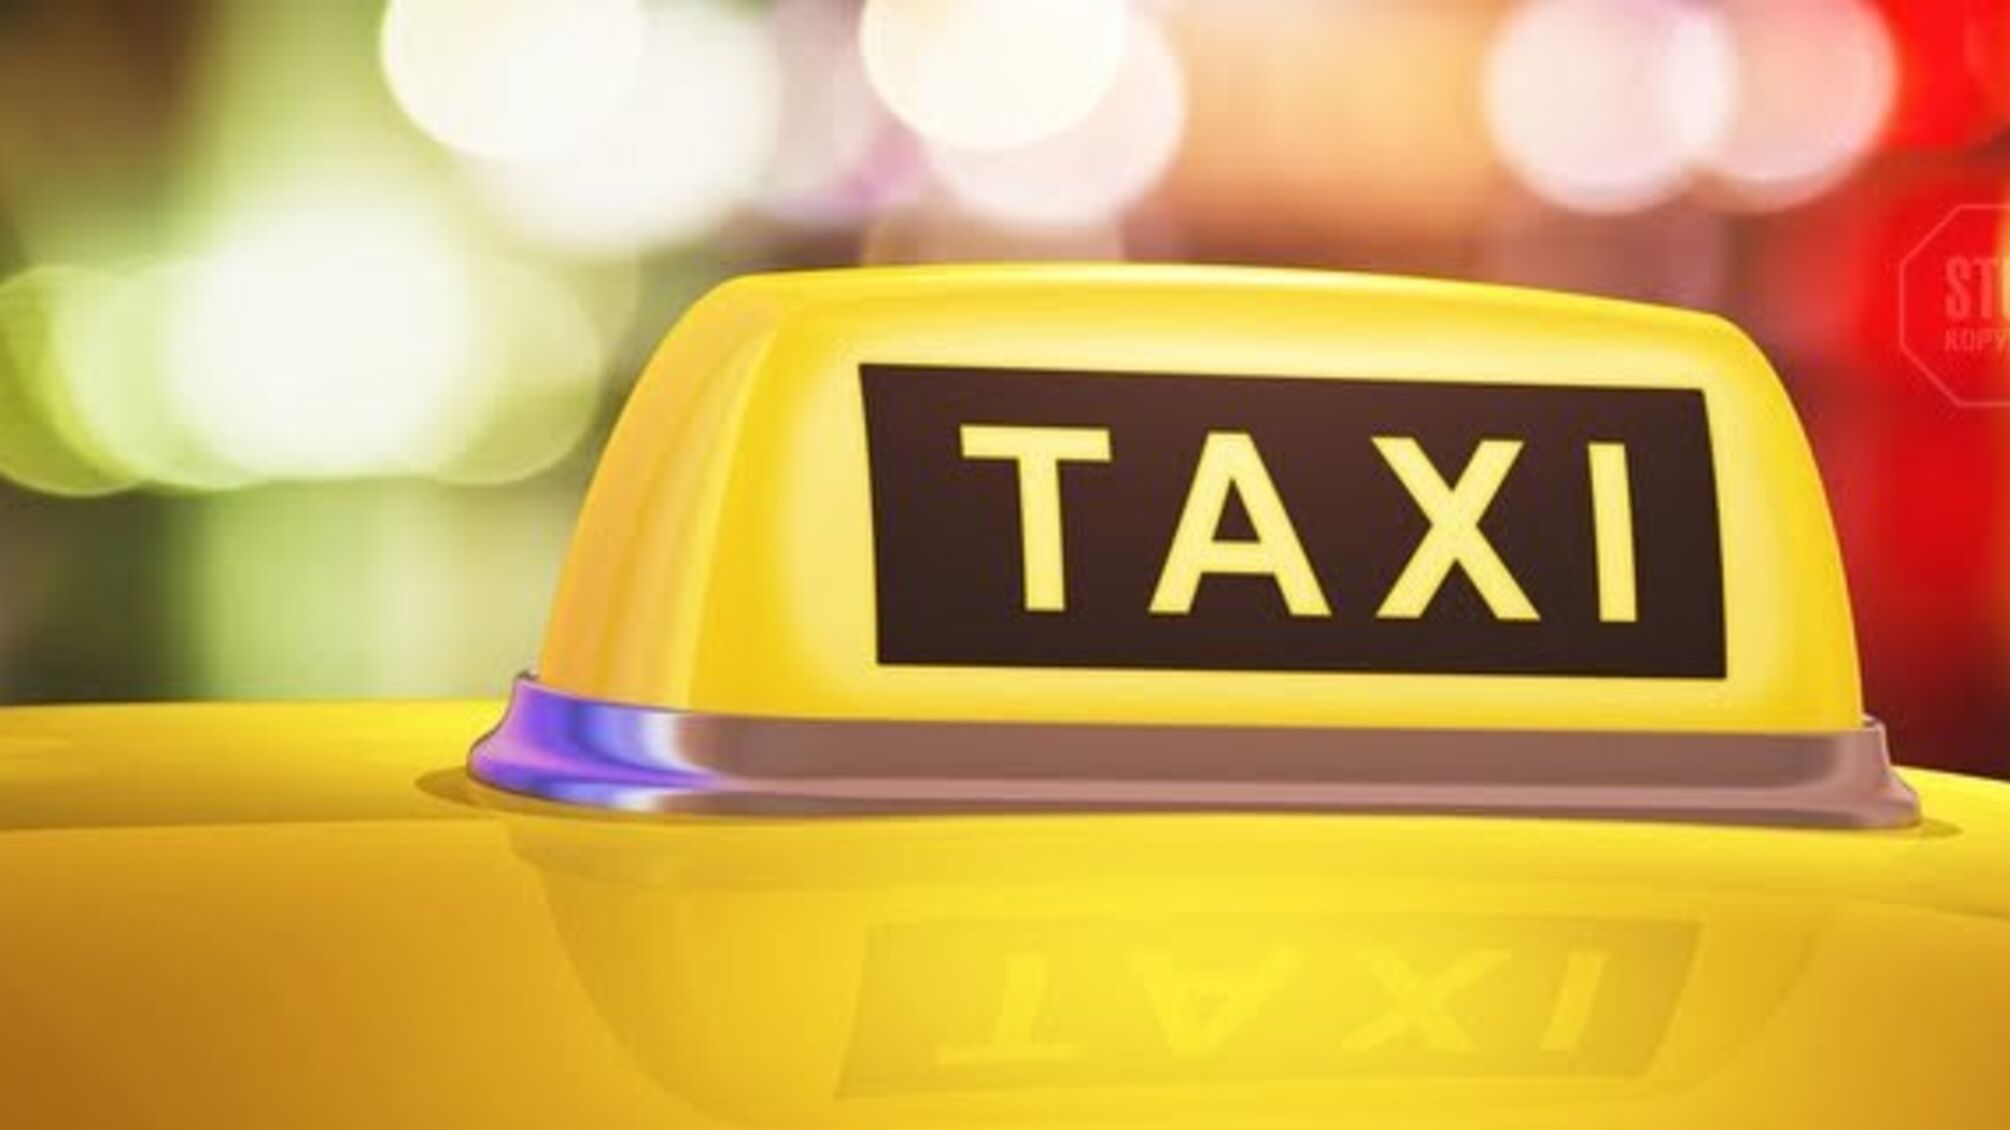 Антимонопольный комитет планирует расследовать рост цен на такси в столице во время локдауна